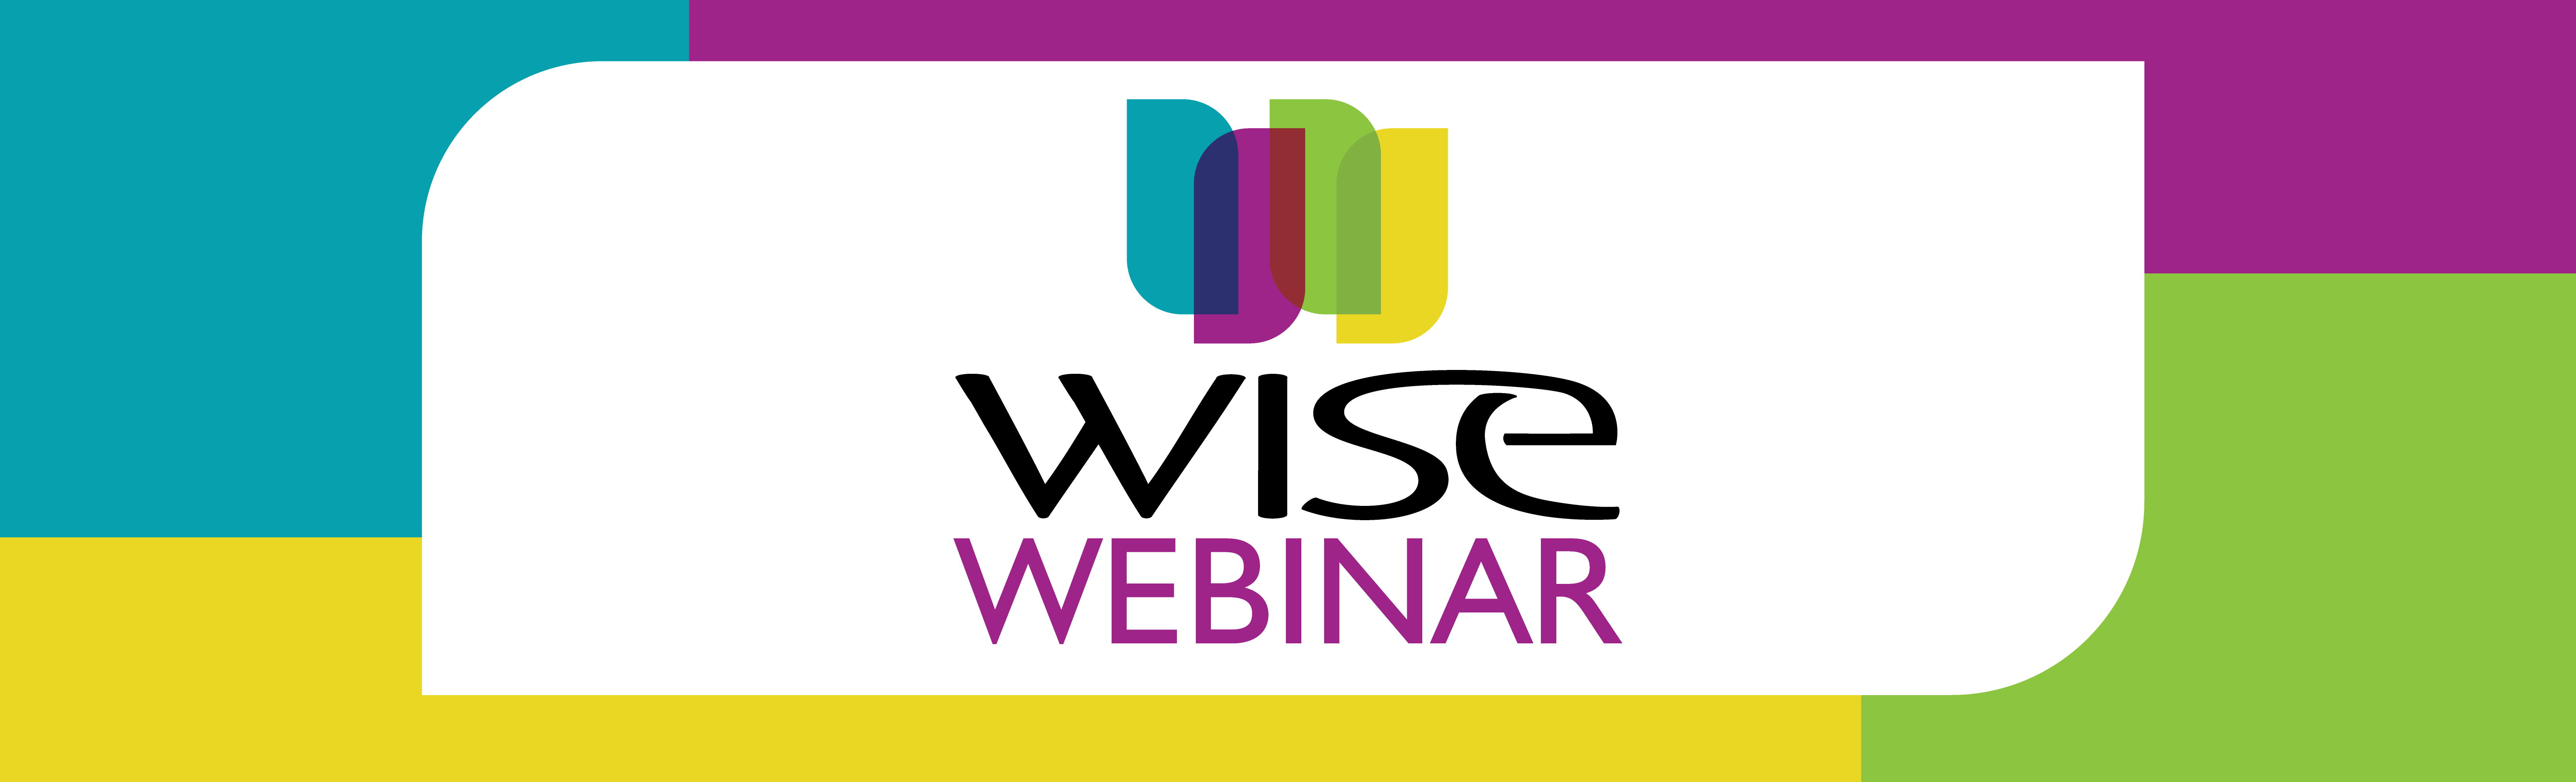 2021 WISE Web Headers_2021 Webinar Header copy 2